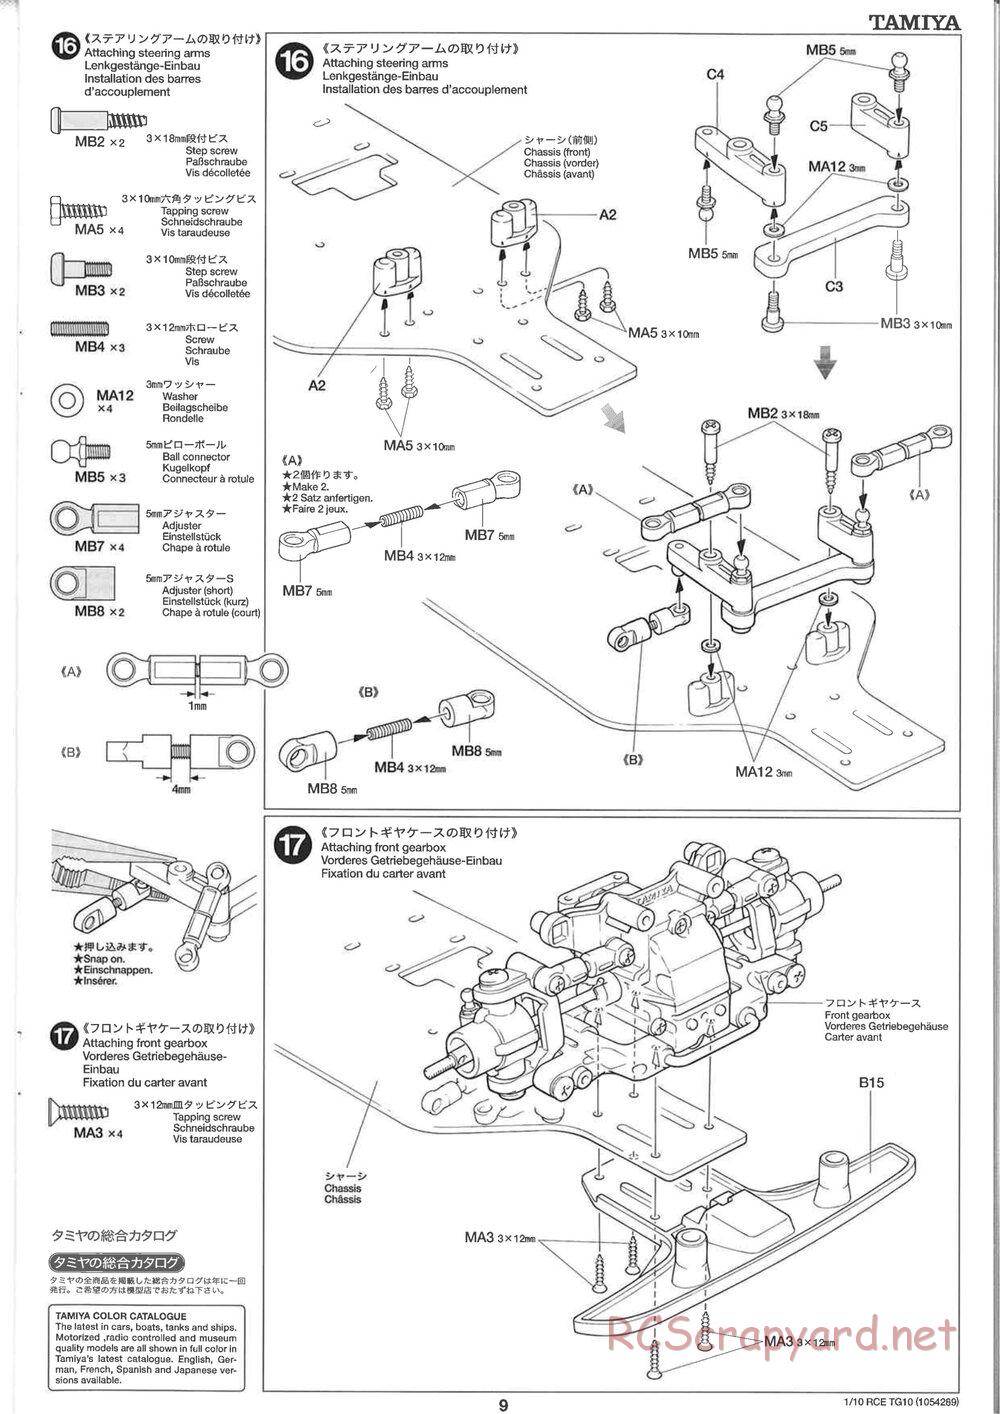 Tamiya - TG10 Mk.1 Chassis - Manual - Page 9